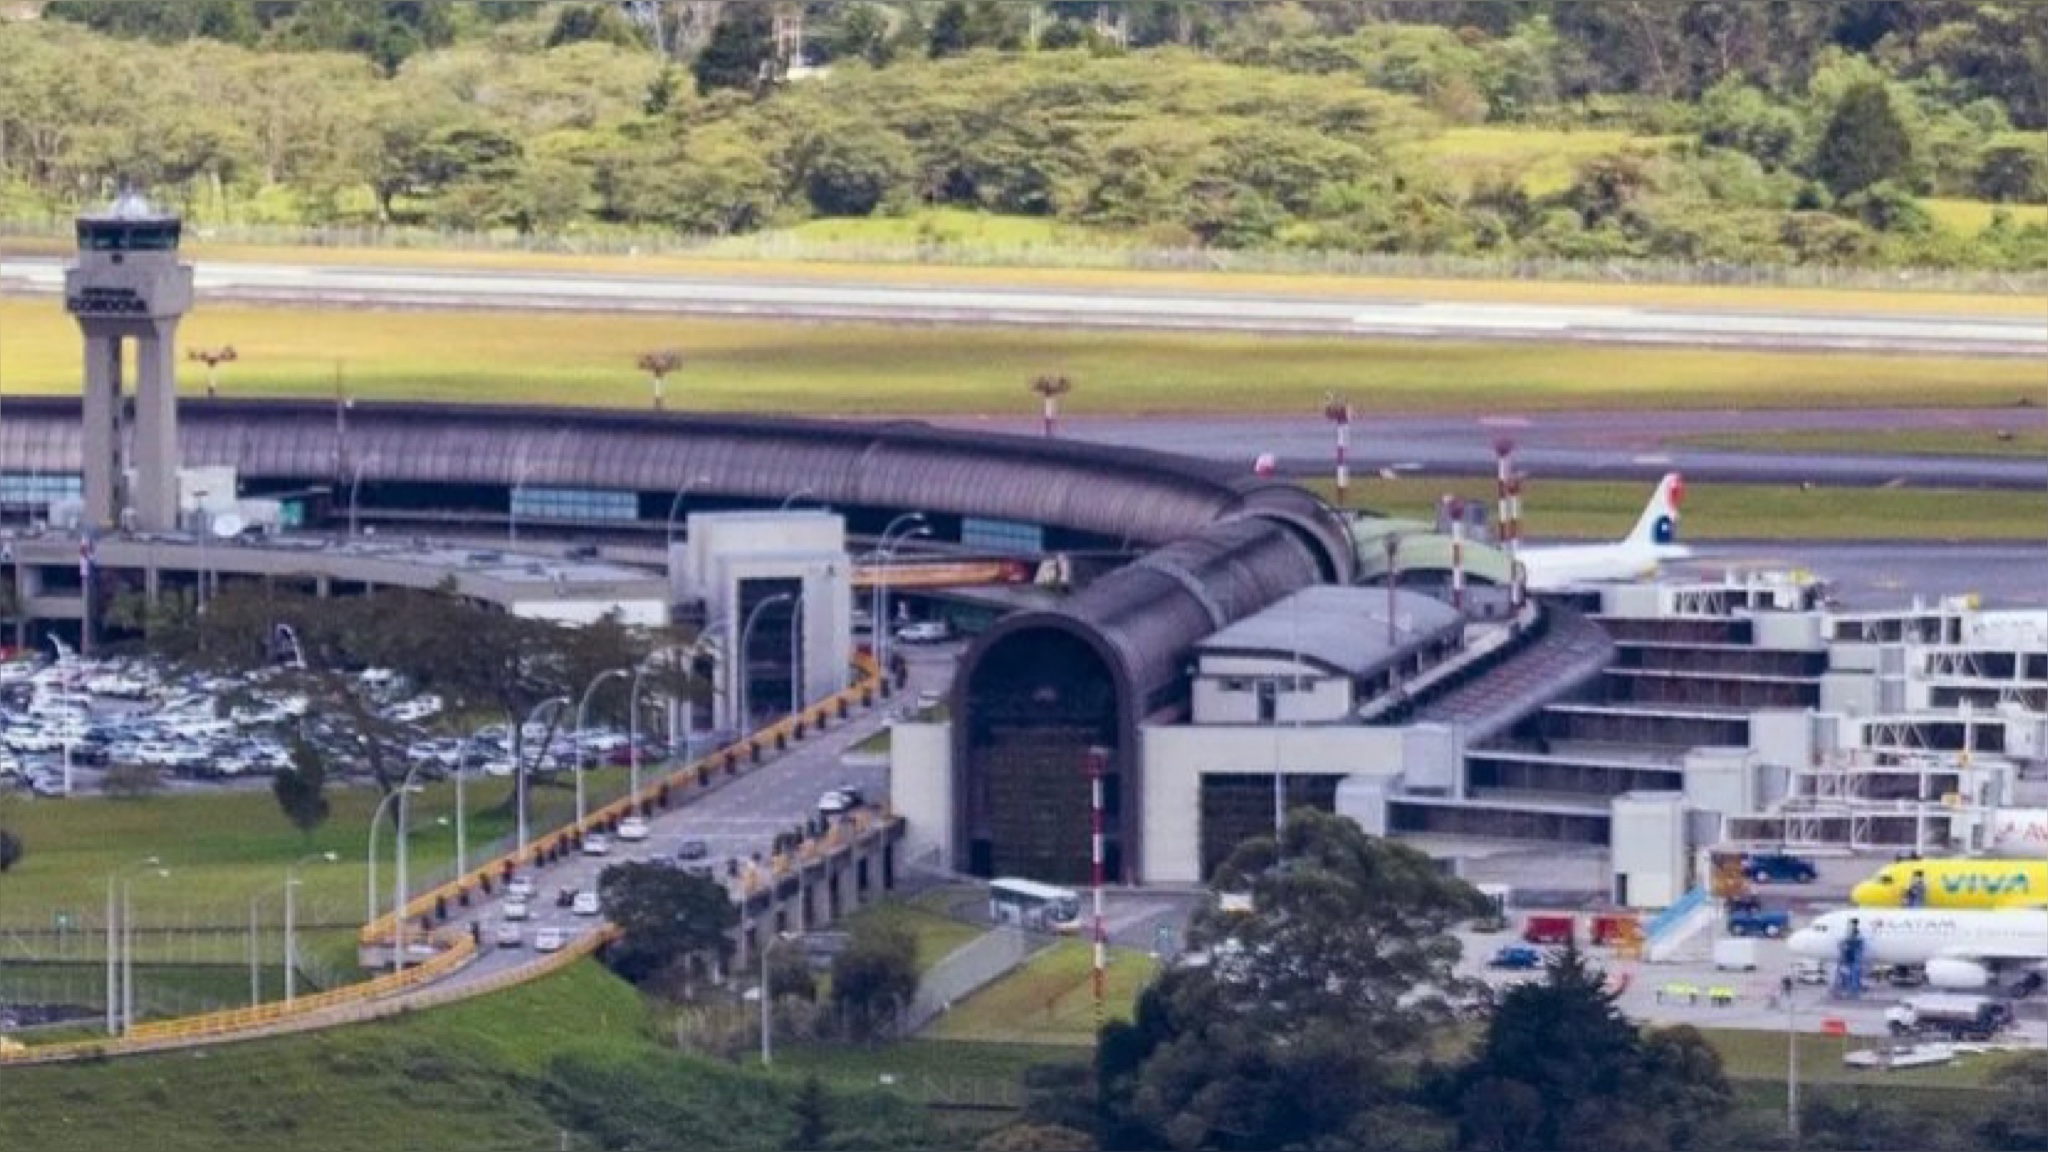 Mintransporte busca acelerar ampliación del aeropuerto JMC